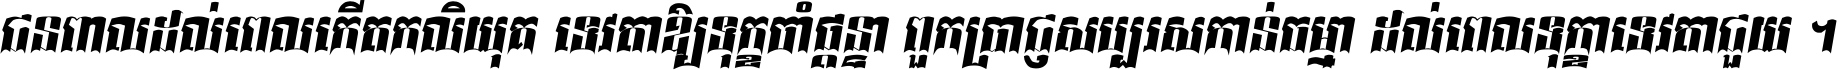 Kh Baphnom Baktouk Italic